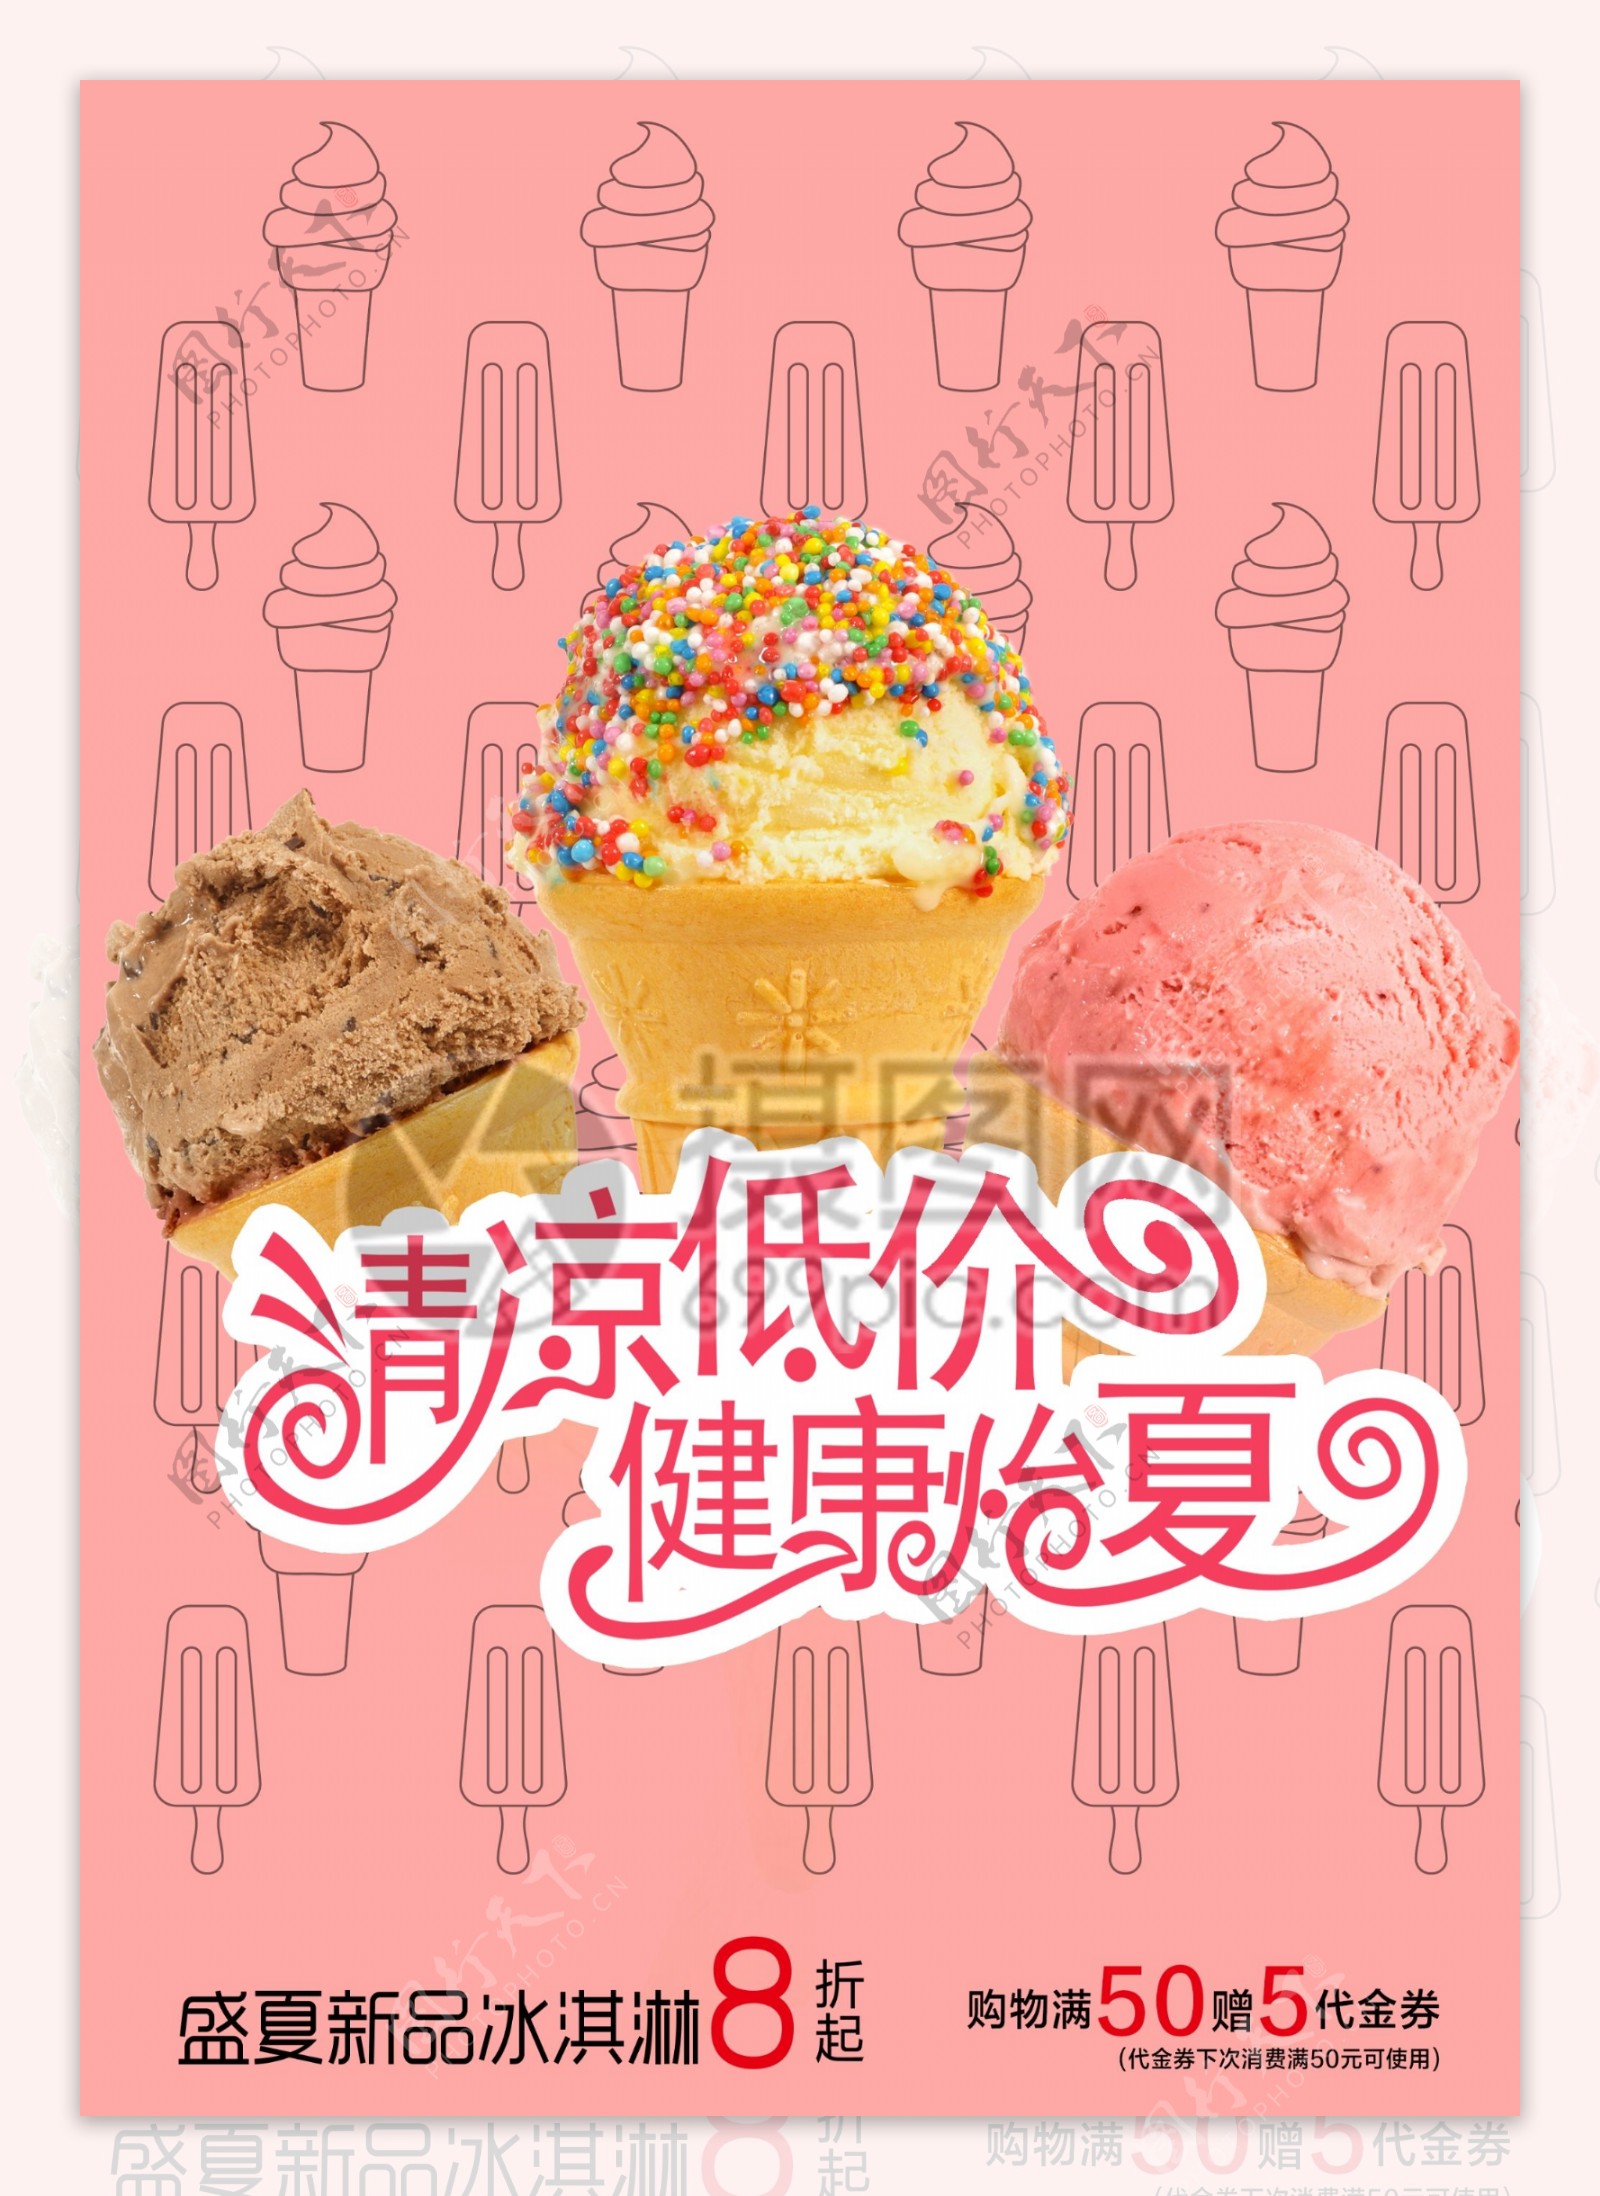 手工冰淇淋宣传海报